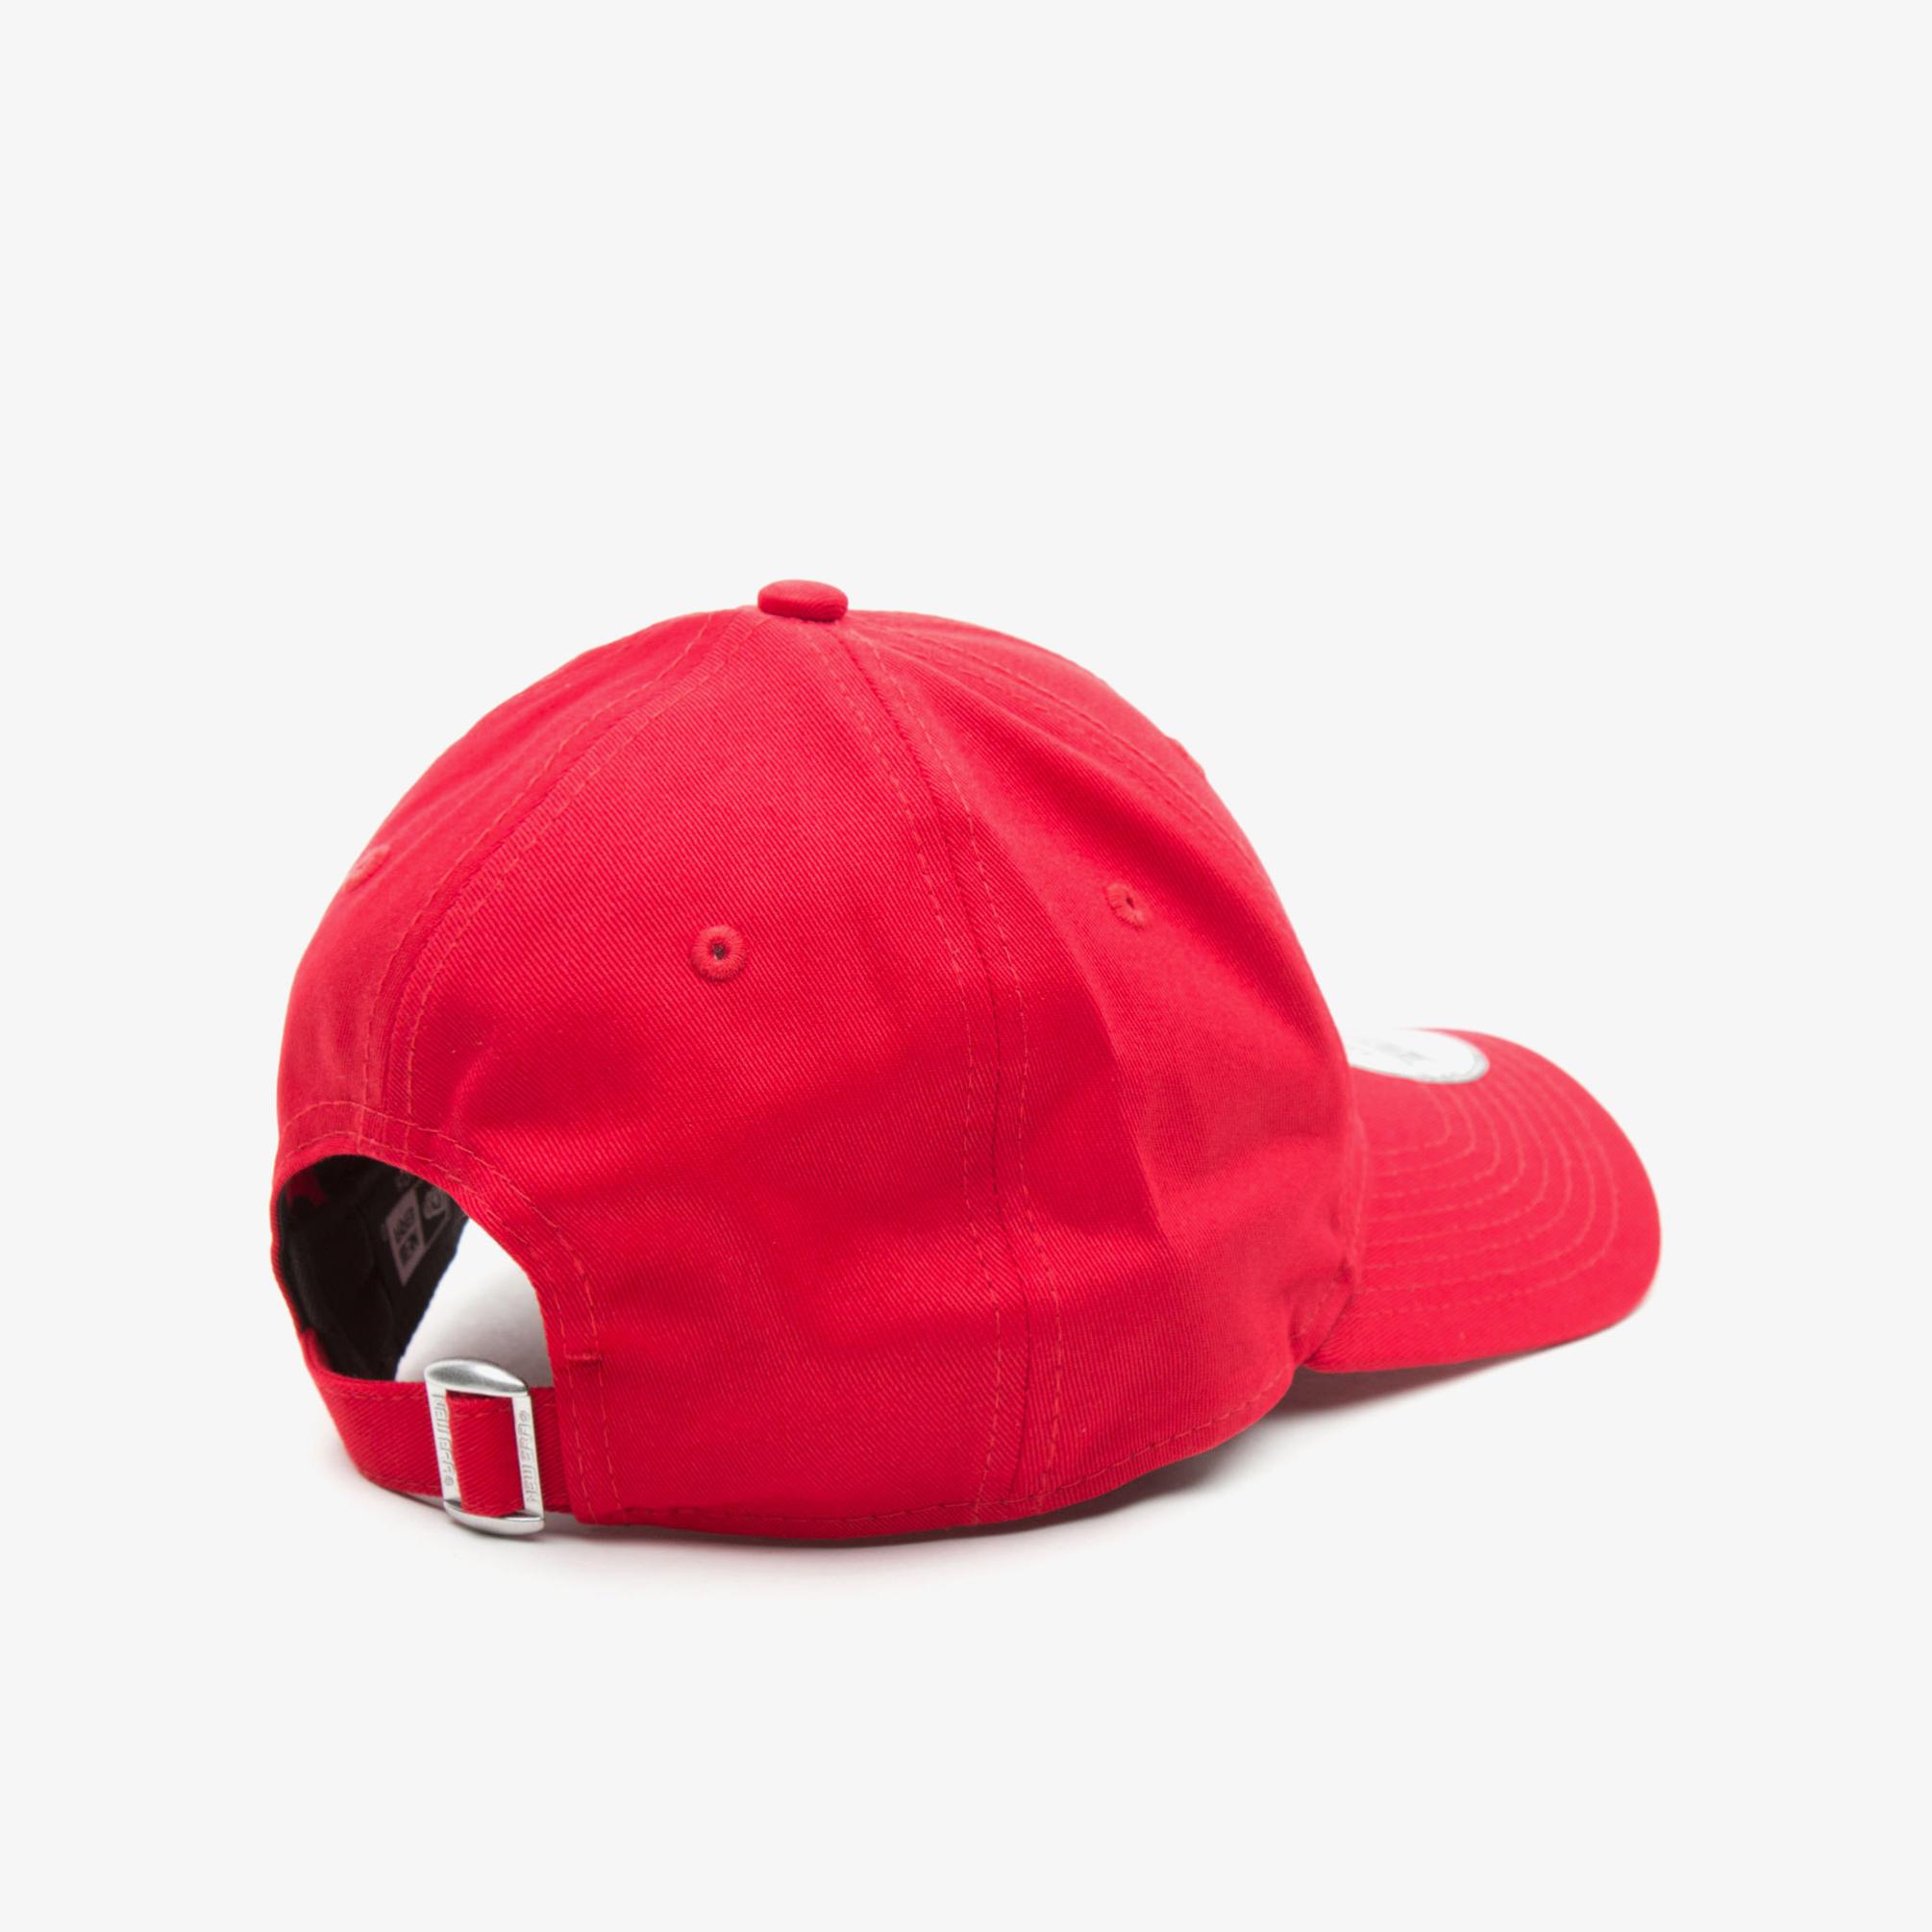  New Era 940 NY Yankees Çocuk Kırmızı Şapka